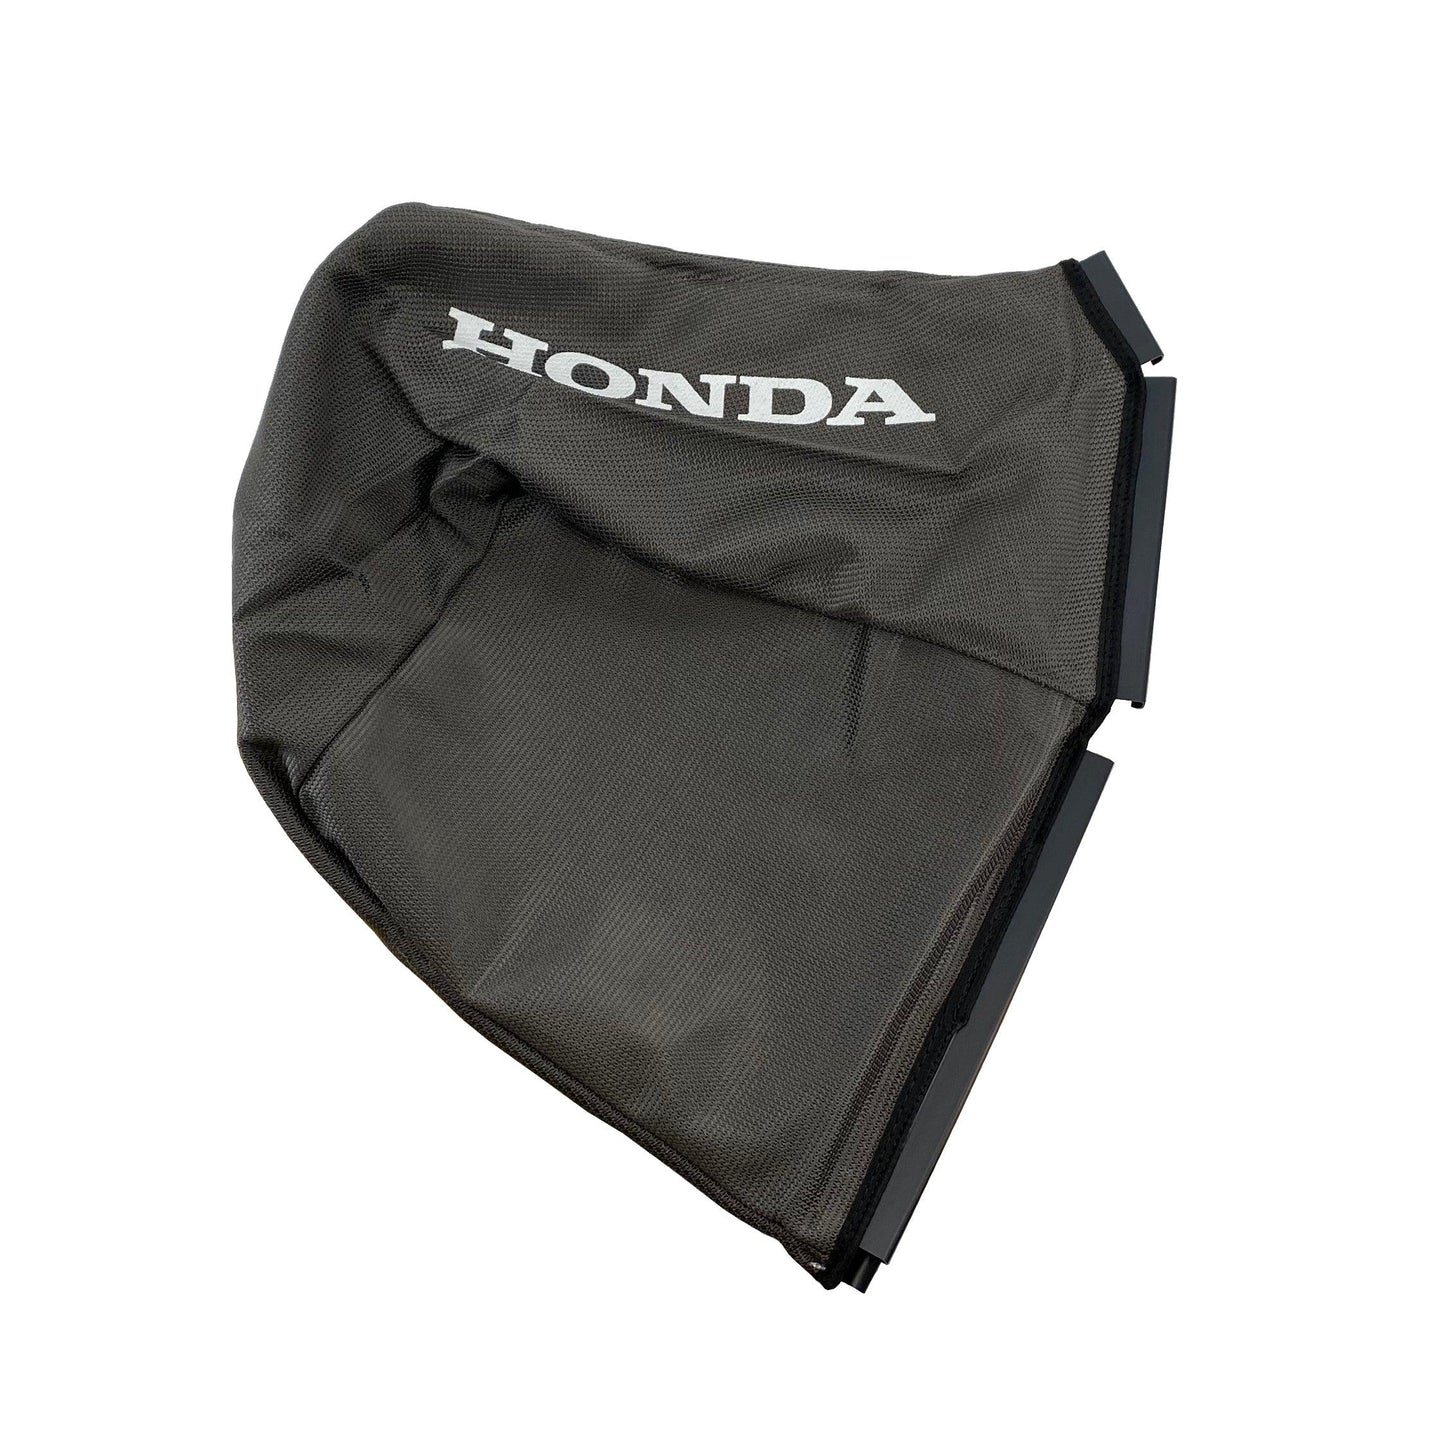 Honda Original Equipment Grass Bag Fabric - 81320-VL0-P00